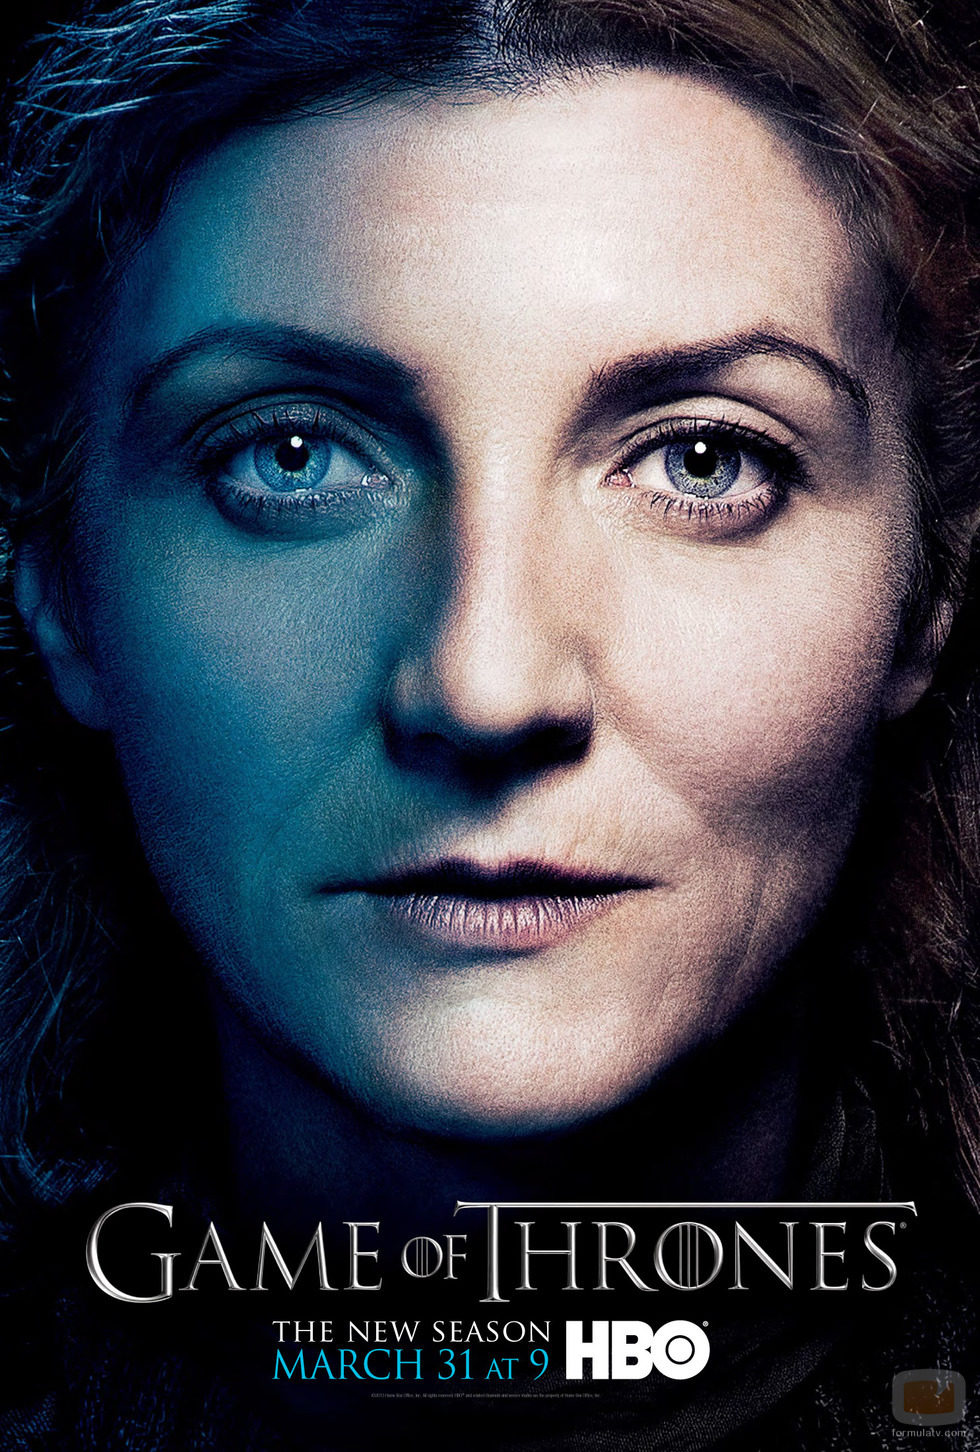 Catelyn Stark en el póster promocional de la tercera temporada de 'Juego de tronos'